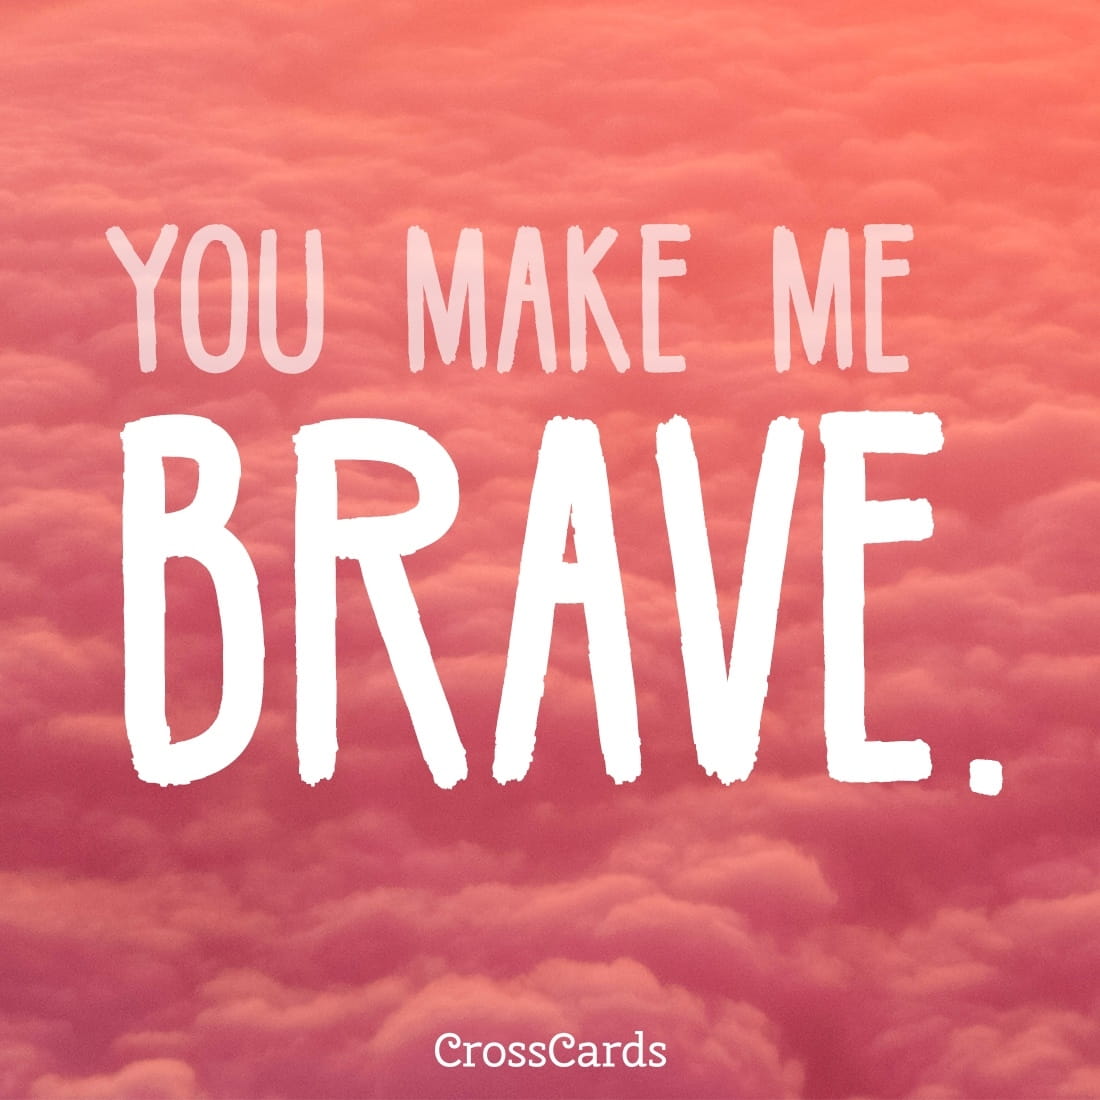 You Make Me Brave ecard, online card